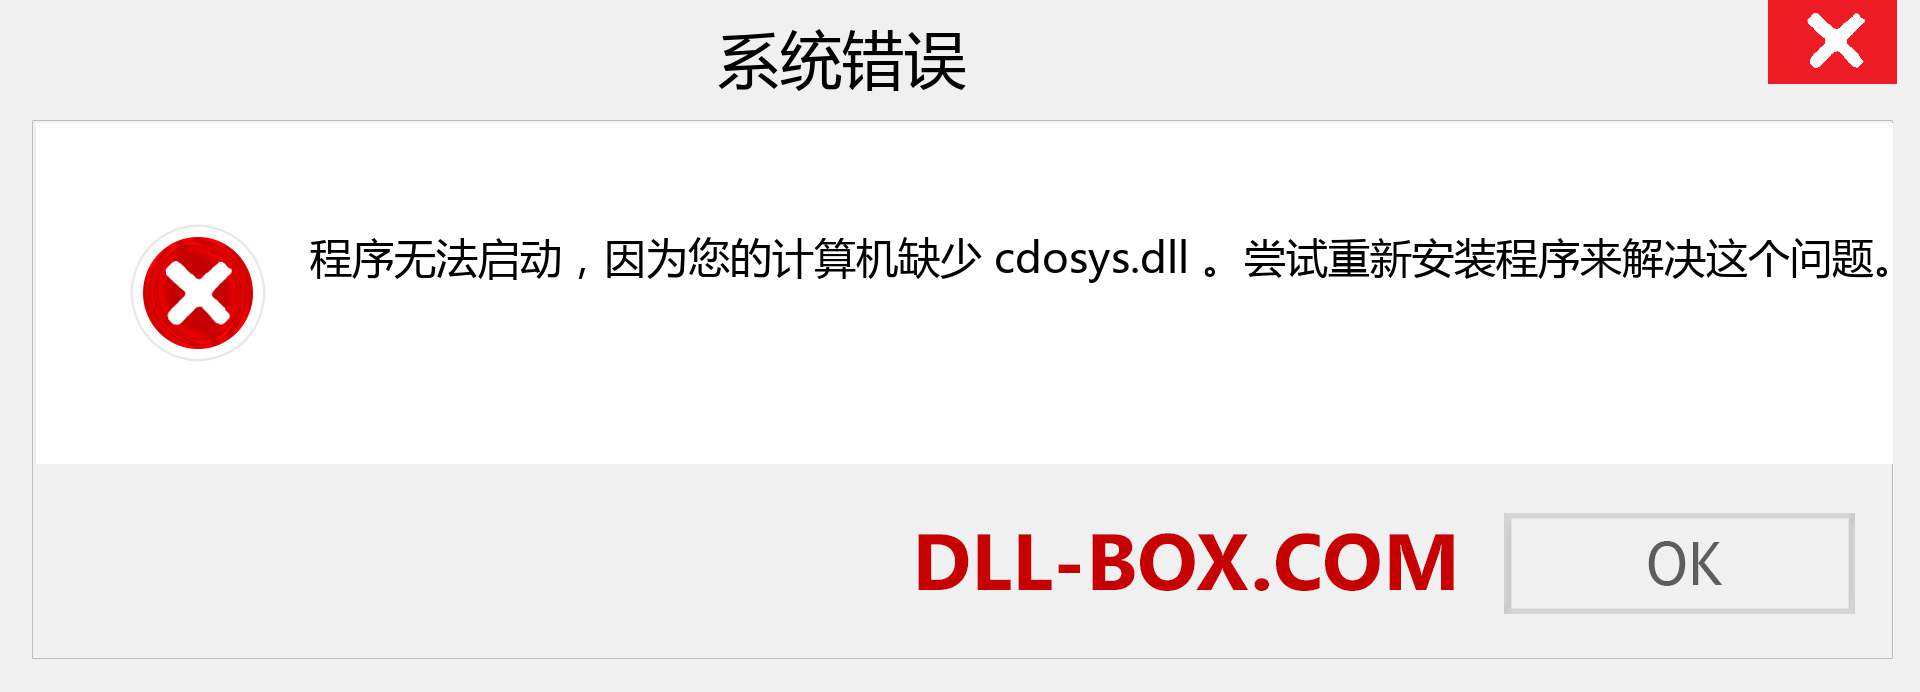 cdosys.dll 文件丢失？。 适用于 Windows 7、8、10 的下载 - 修复 Windows、照片、图像上的 cdosys dll 丢失错误